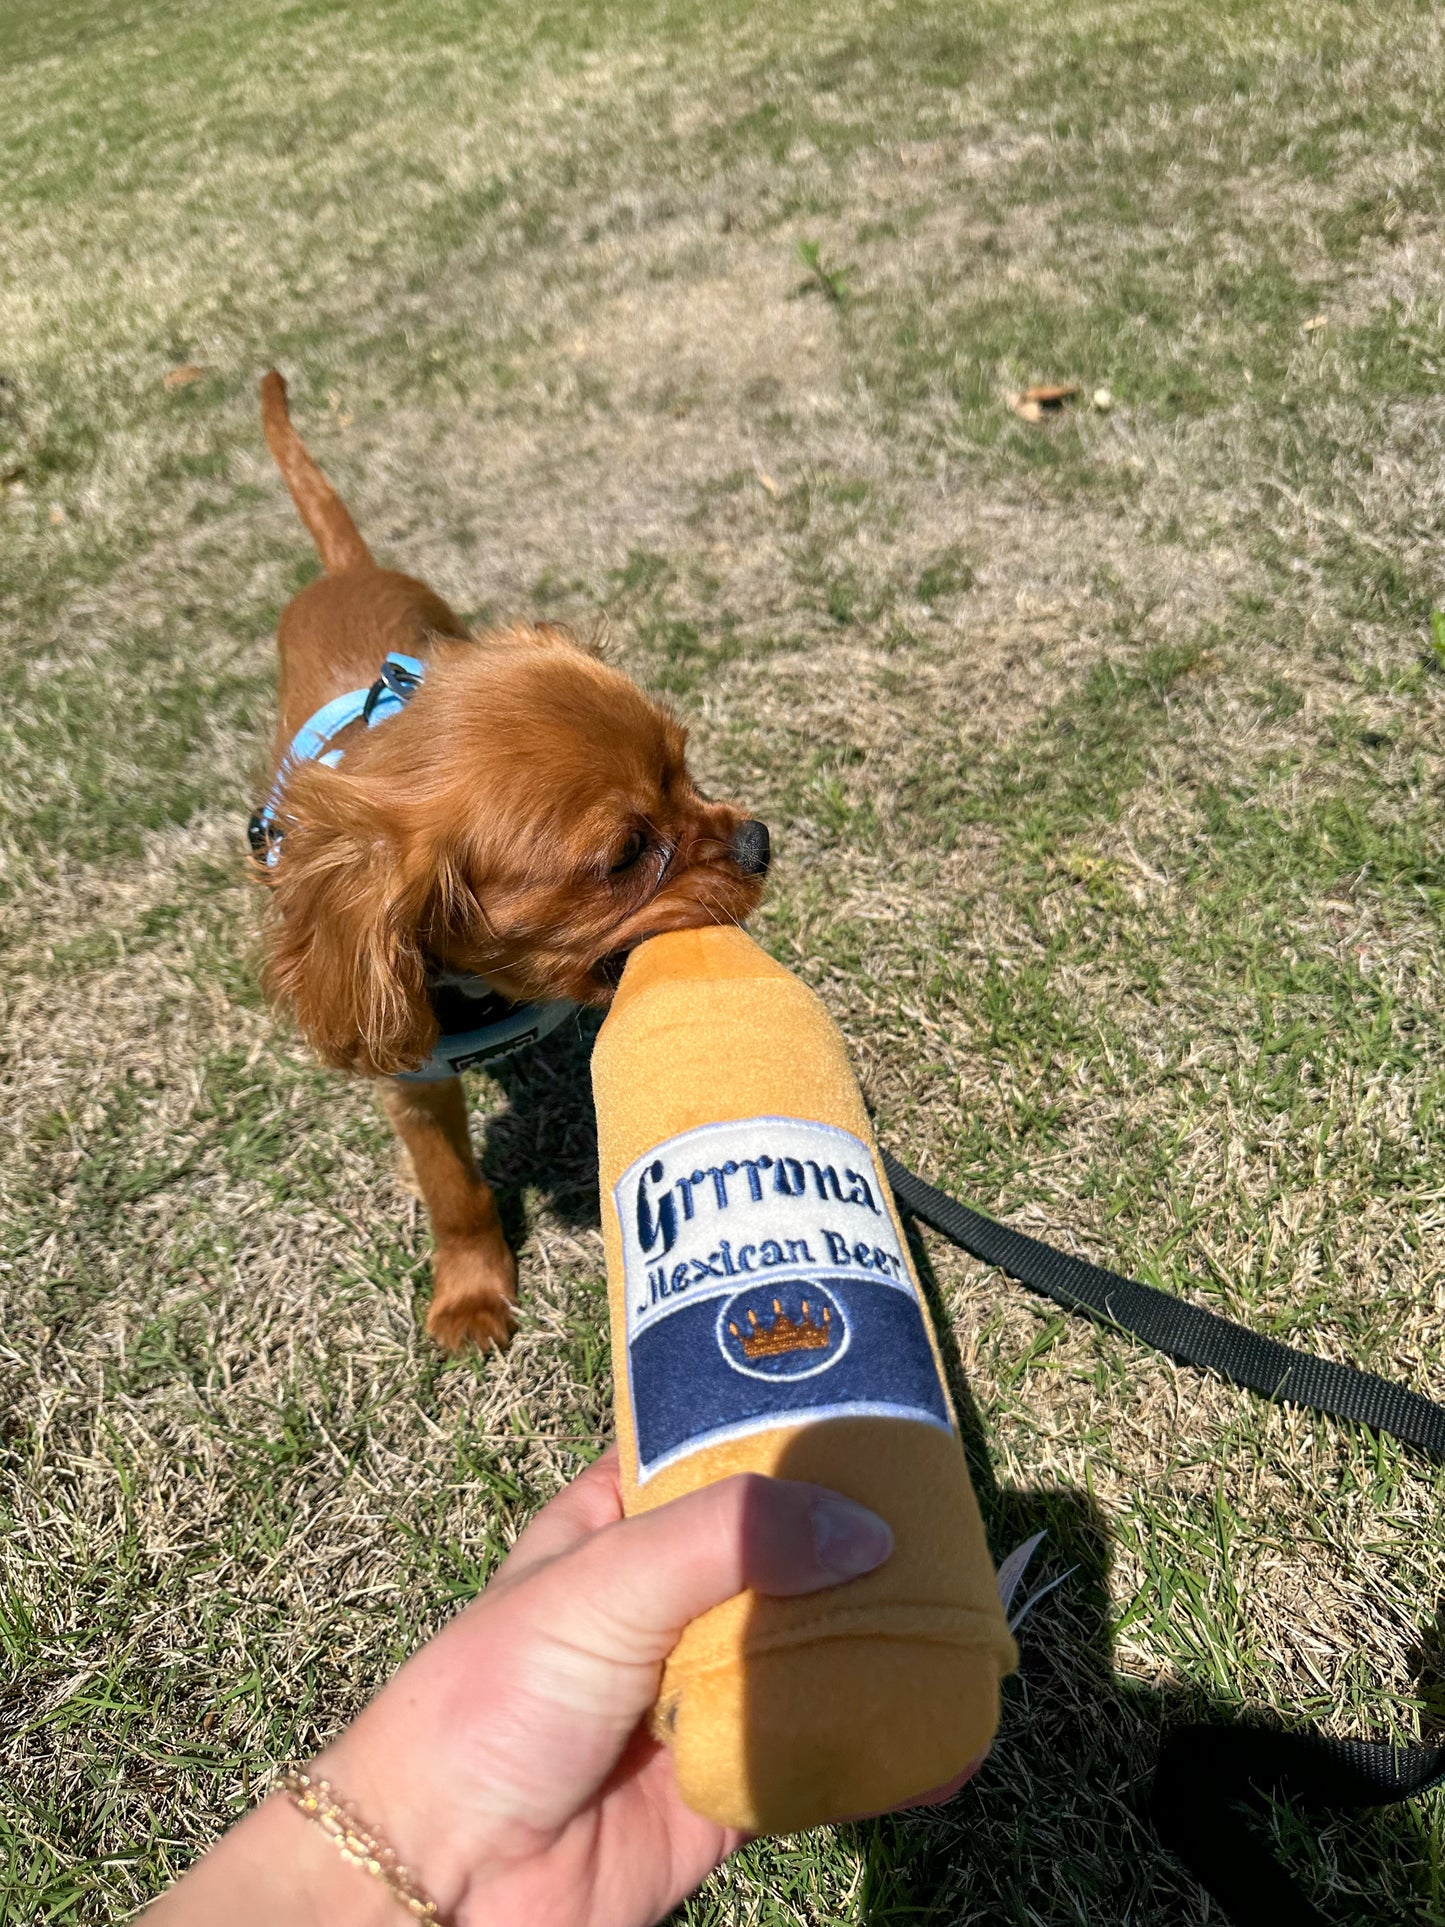 Grrrona Beer Water Bottle Crackler Dog Toy